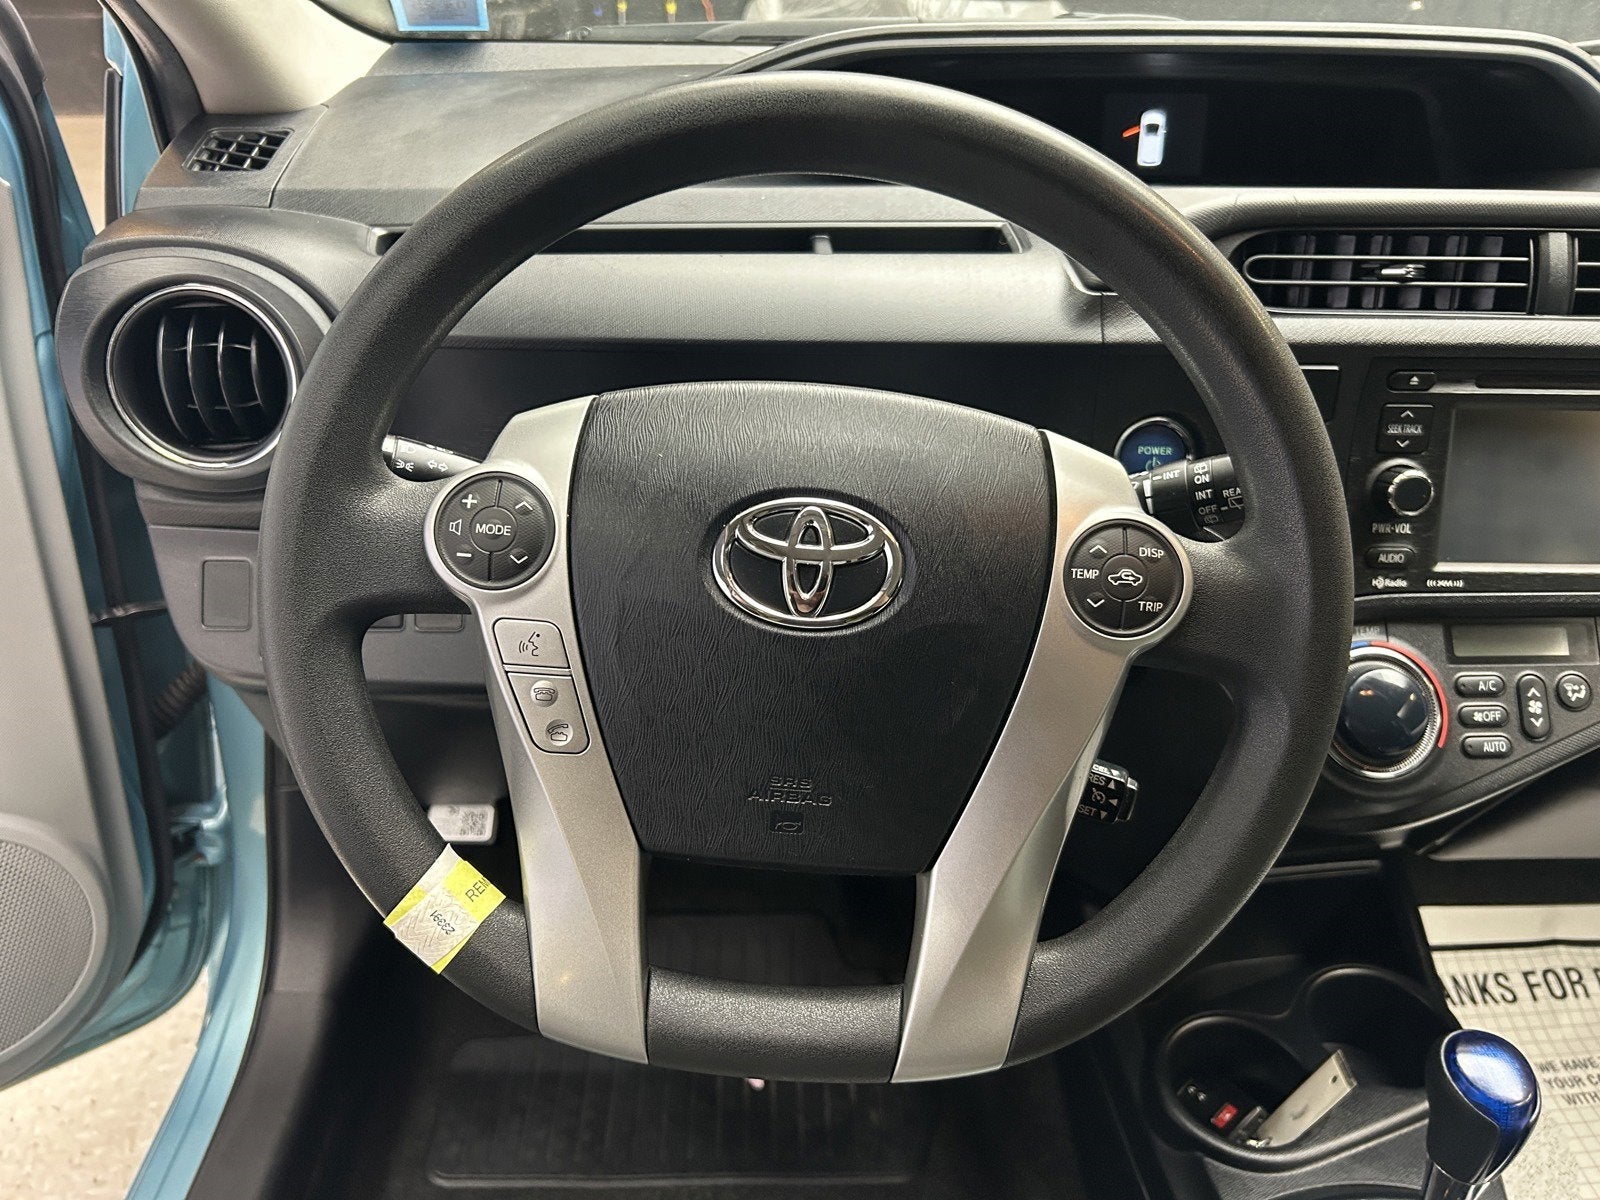 2014 Toyota Prius c Three